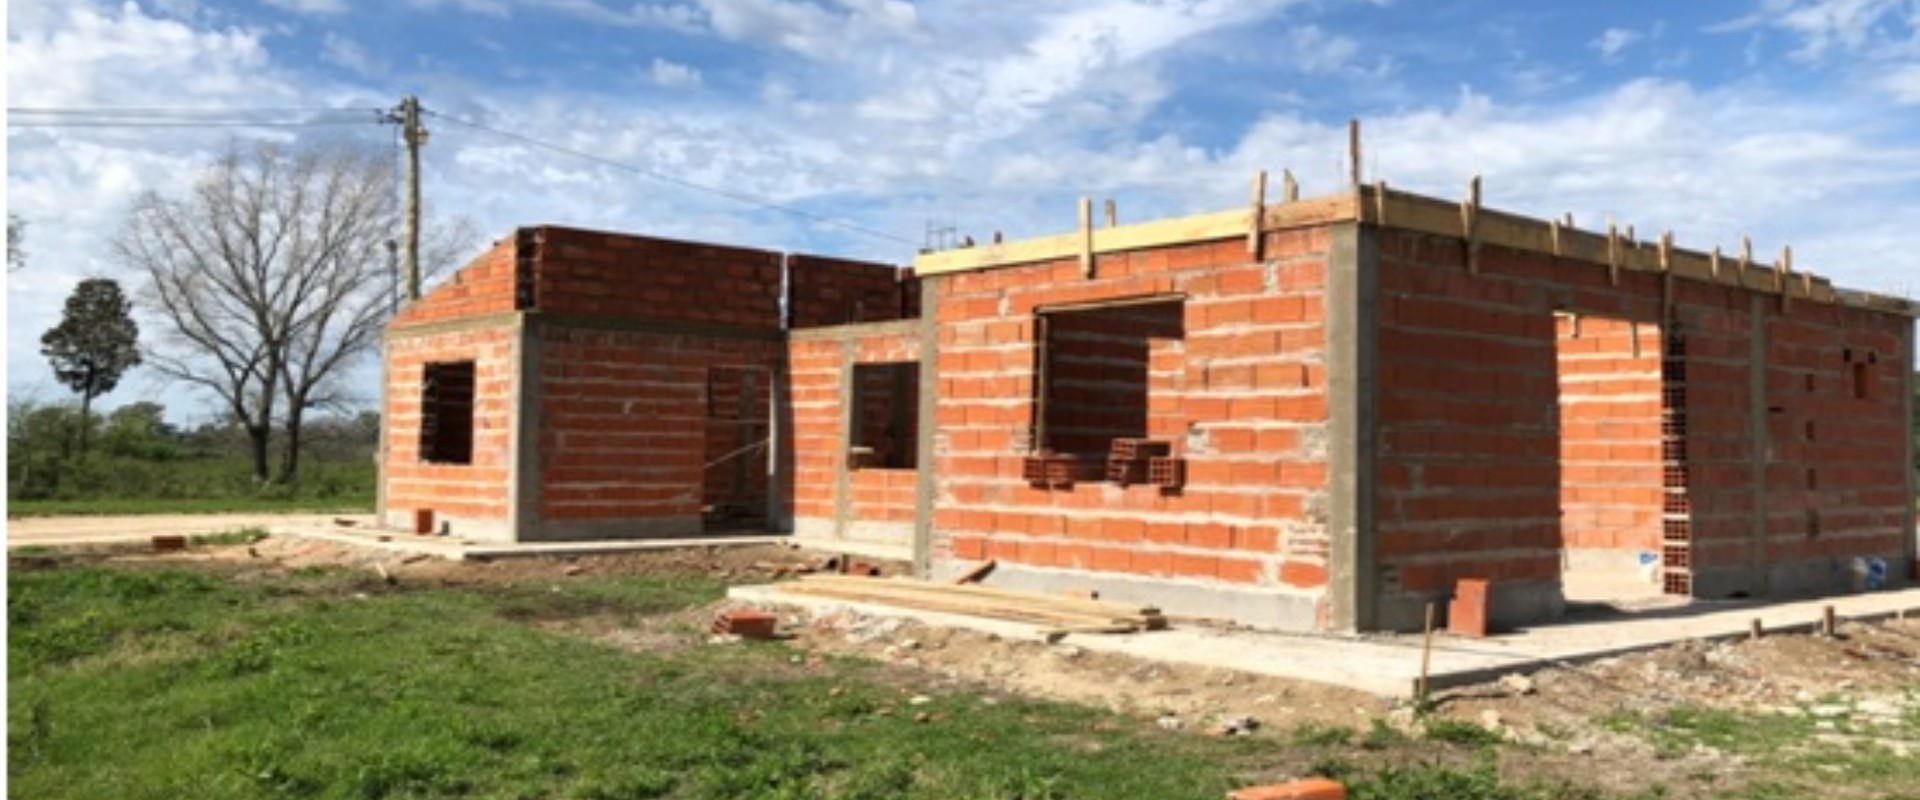 Se ejecutarán nuevas viviendas para María Grande financiadas por la provincia